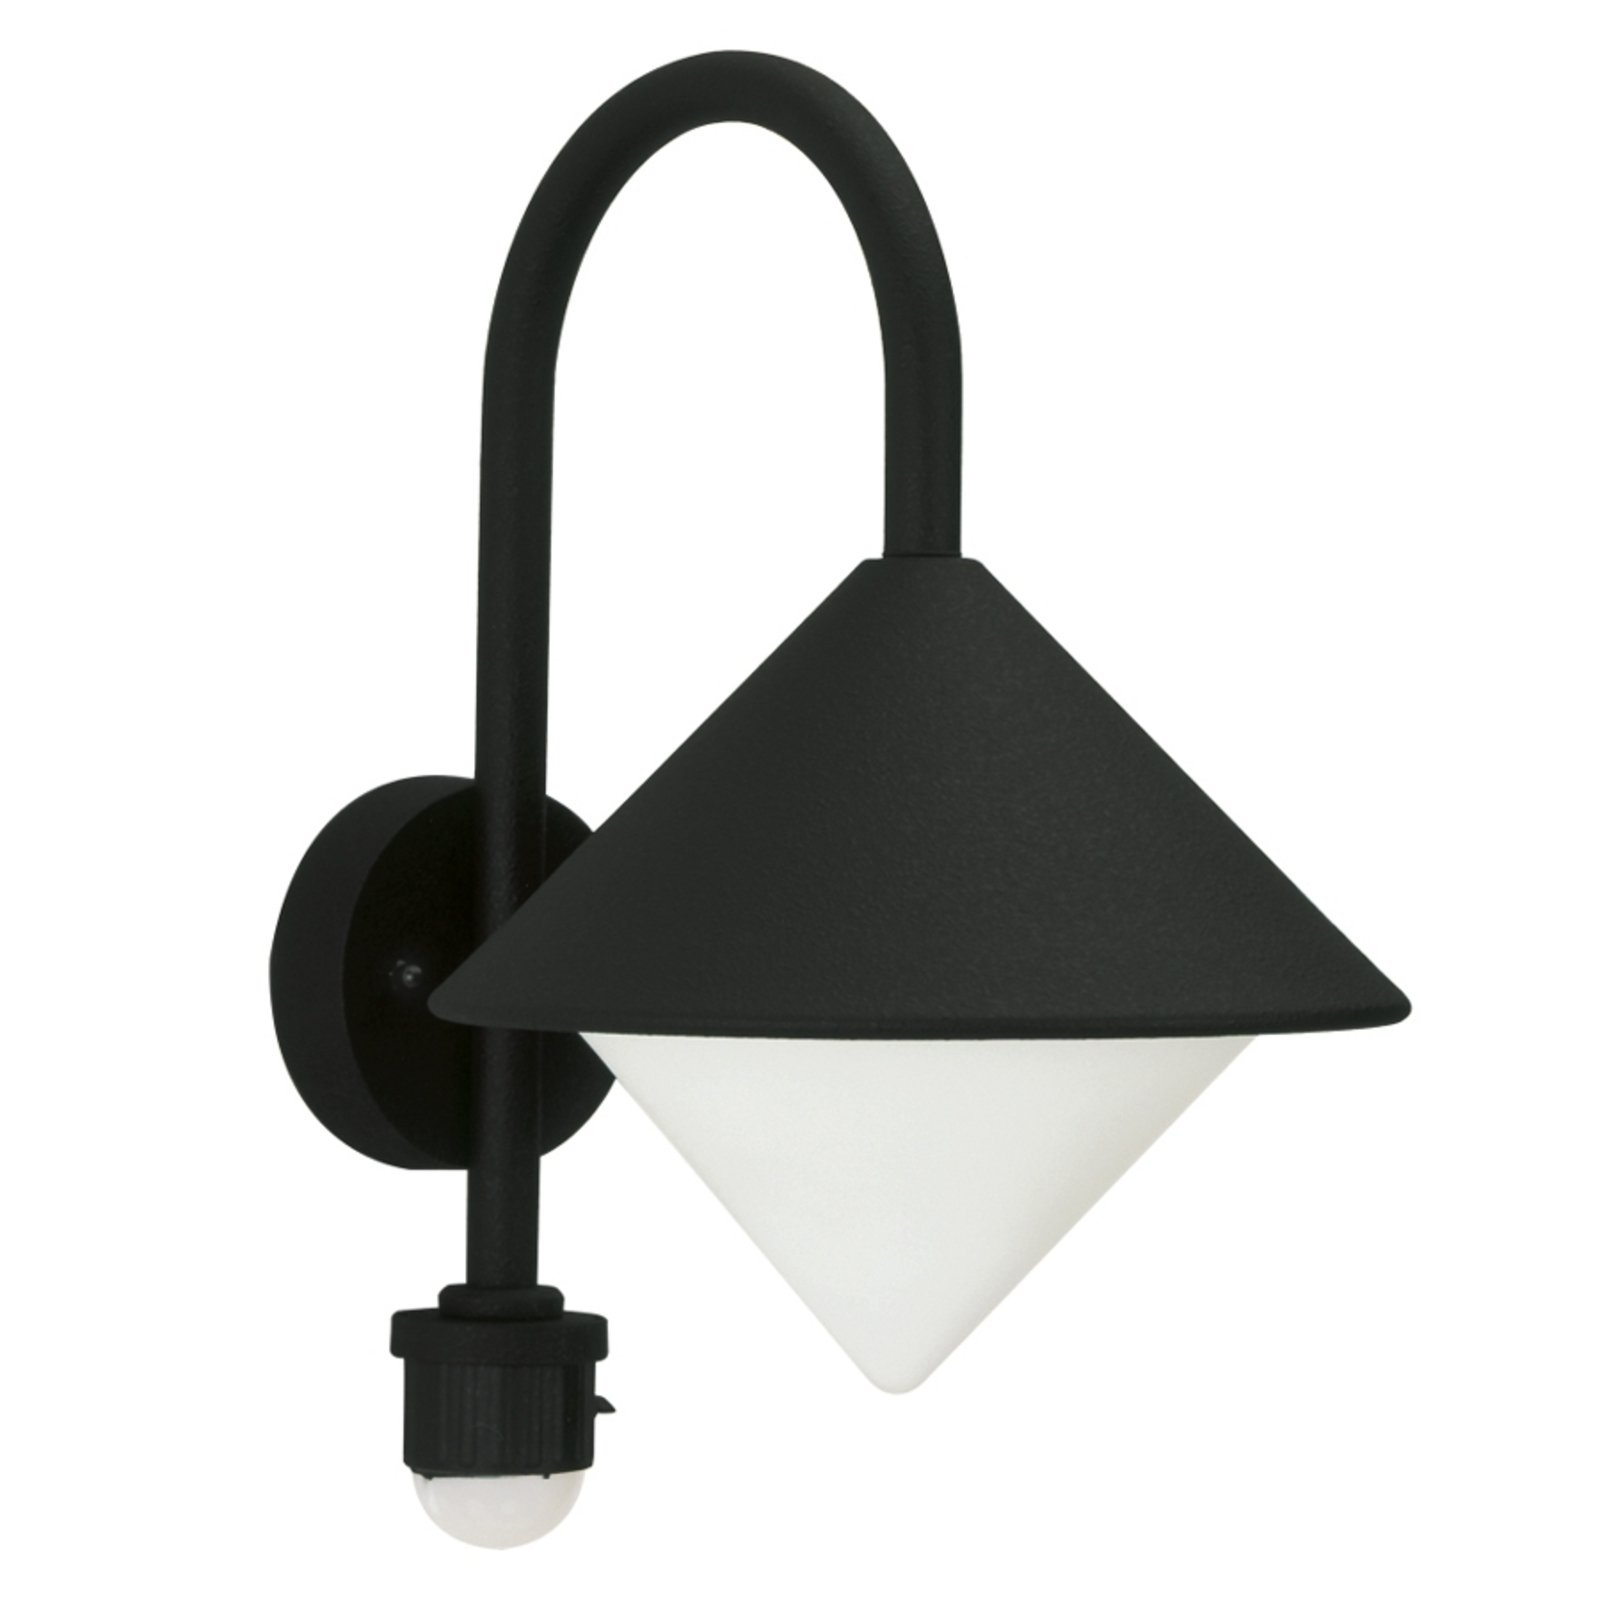 Jolanda vanjska zidna svjetiljka crna s pokretom.